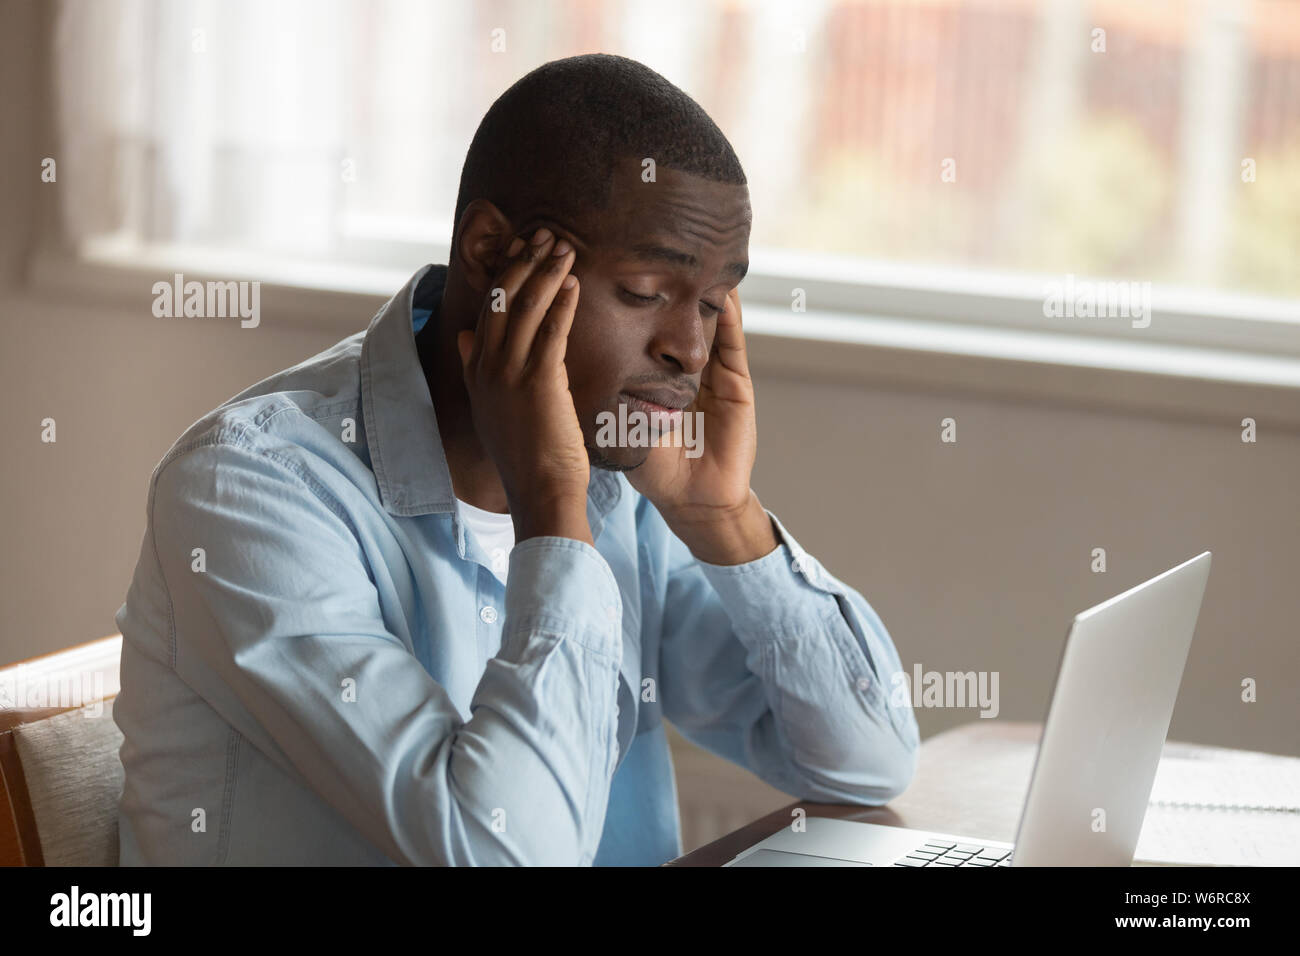 African ragazzo seduto vicino al computer lo sfregamento dei templi si sente male Foto Stock